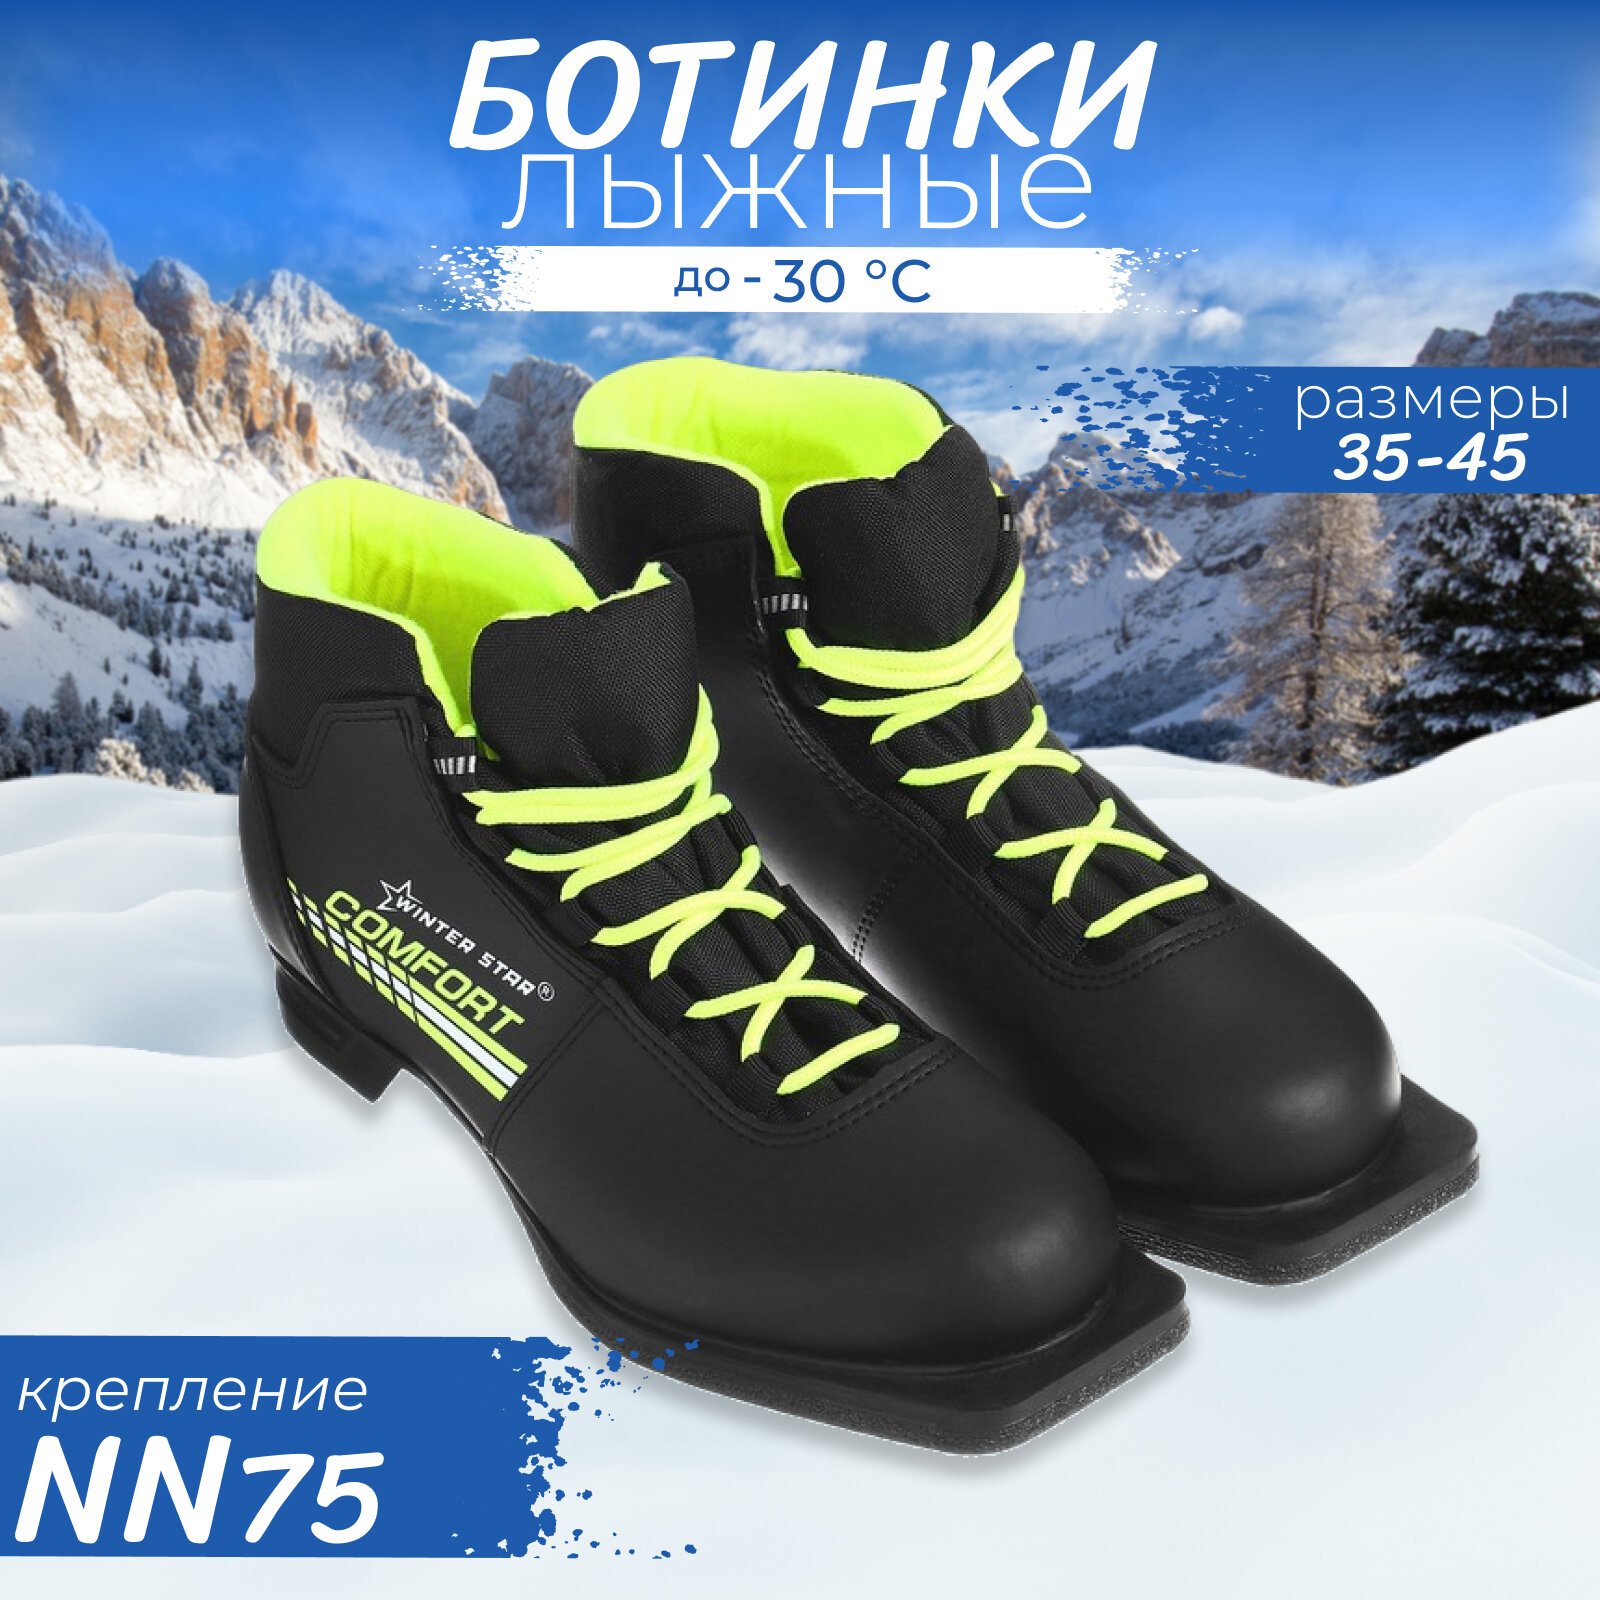 Ботинки лыжные Winter Star comfort, NN75, размер 42, цвет чёрный, салатовый